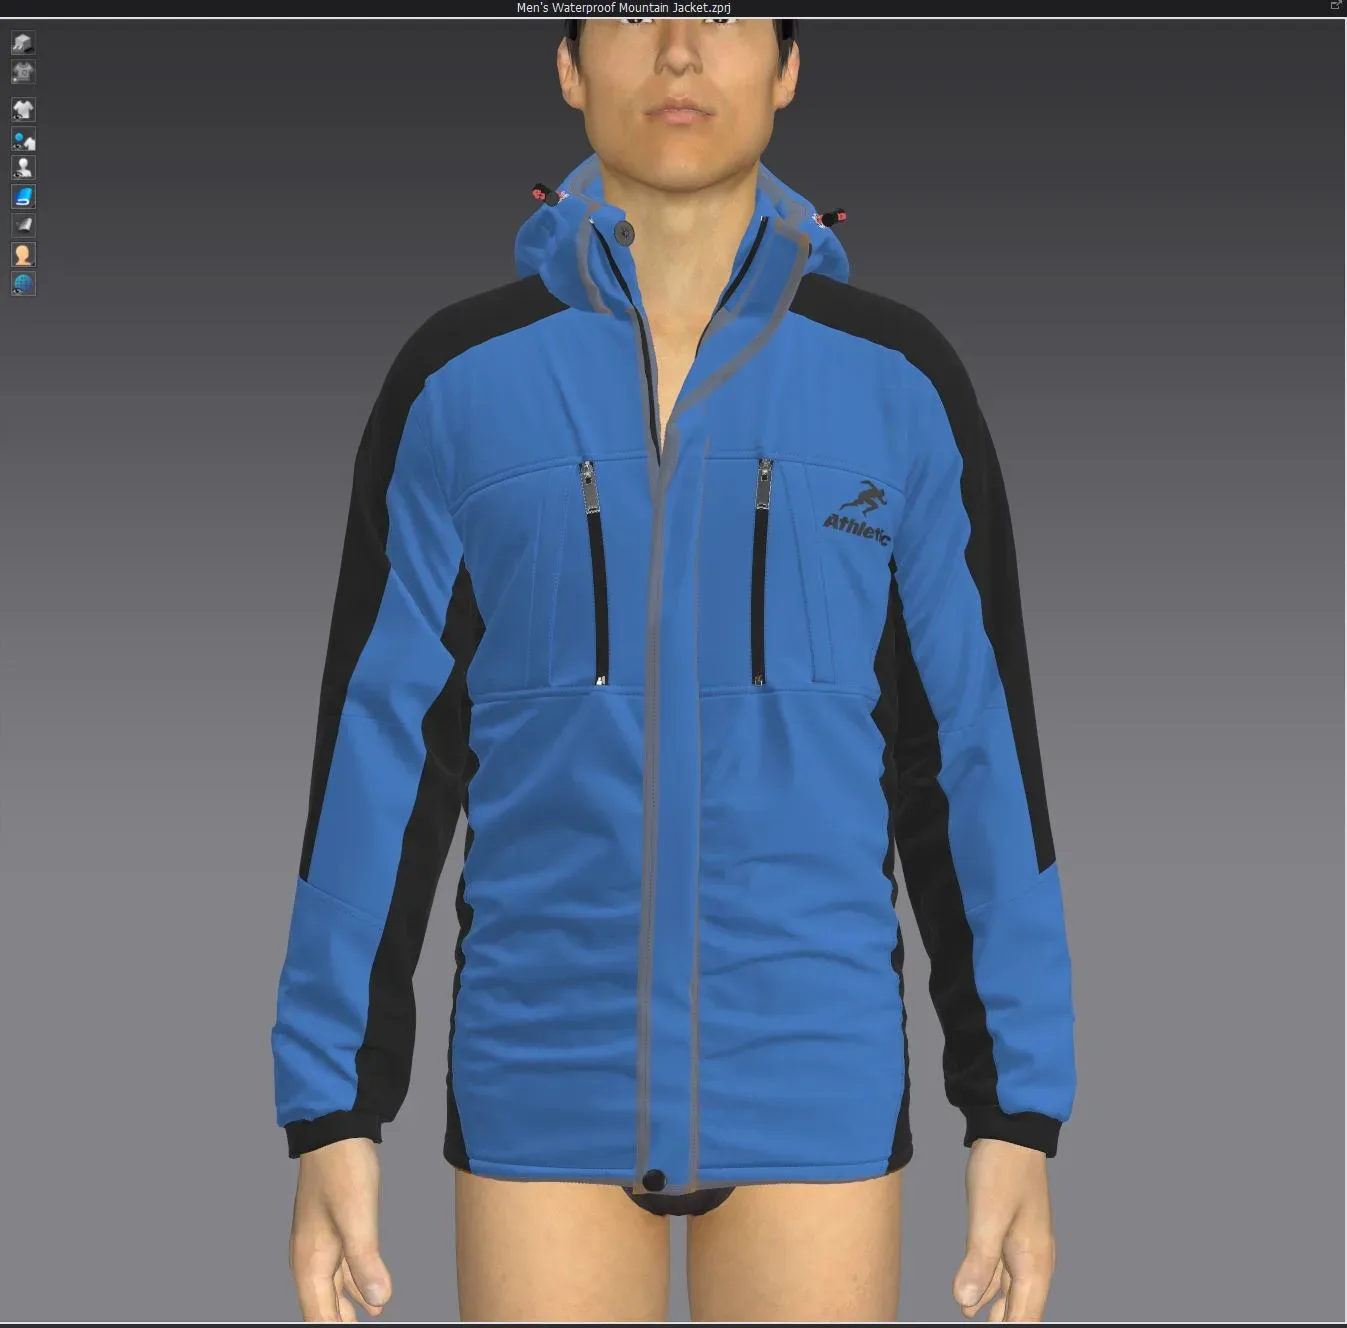 Men's Waterproof Mountain Jacket , marvelous designer,clo3d